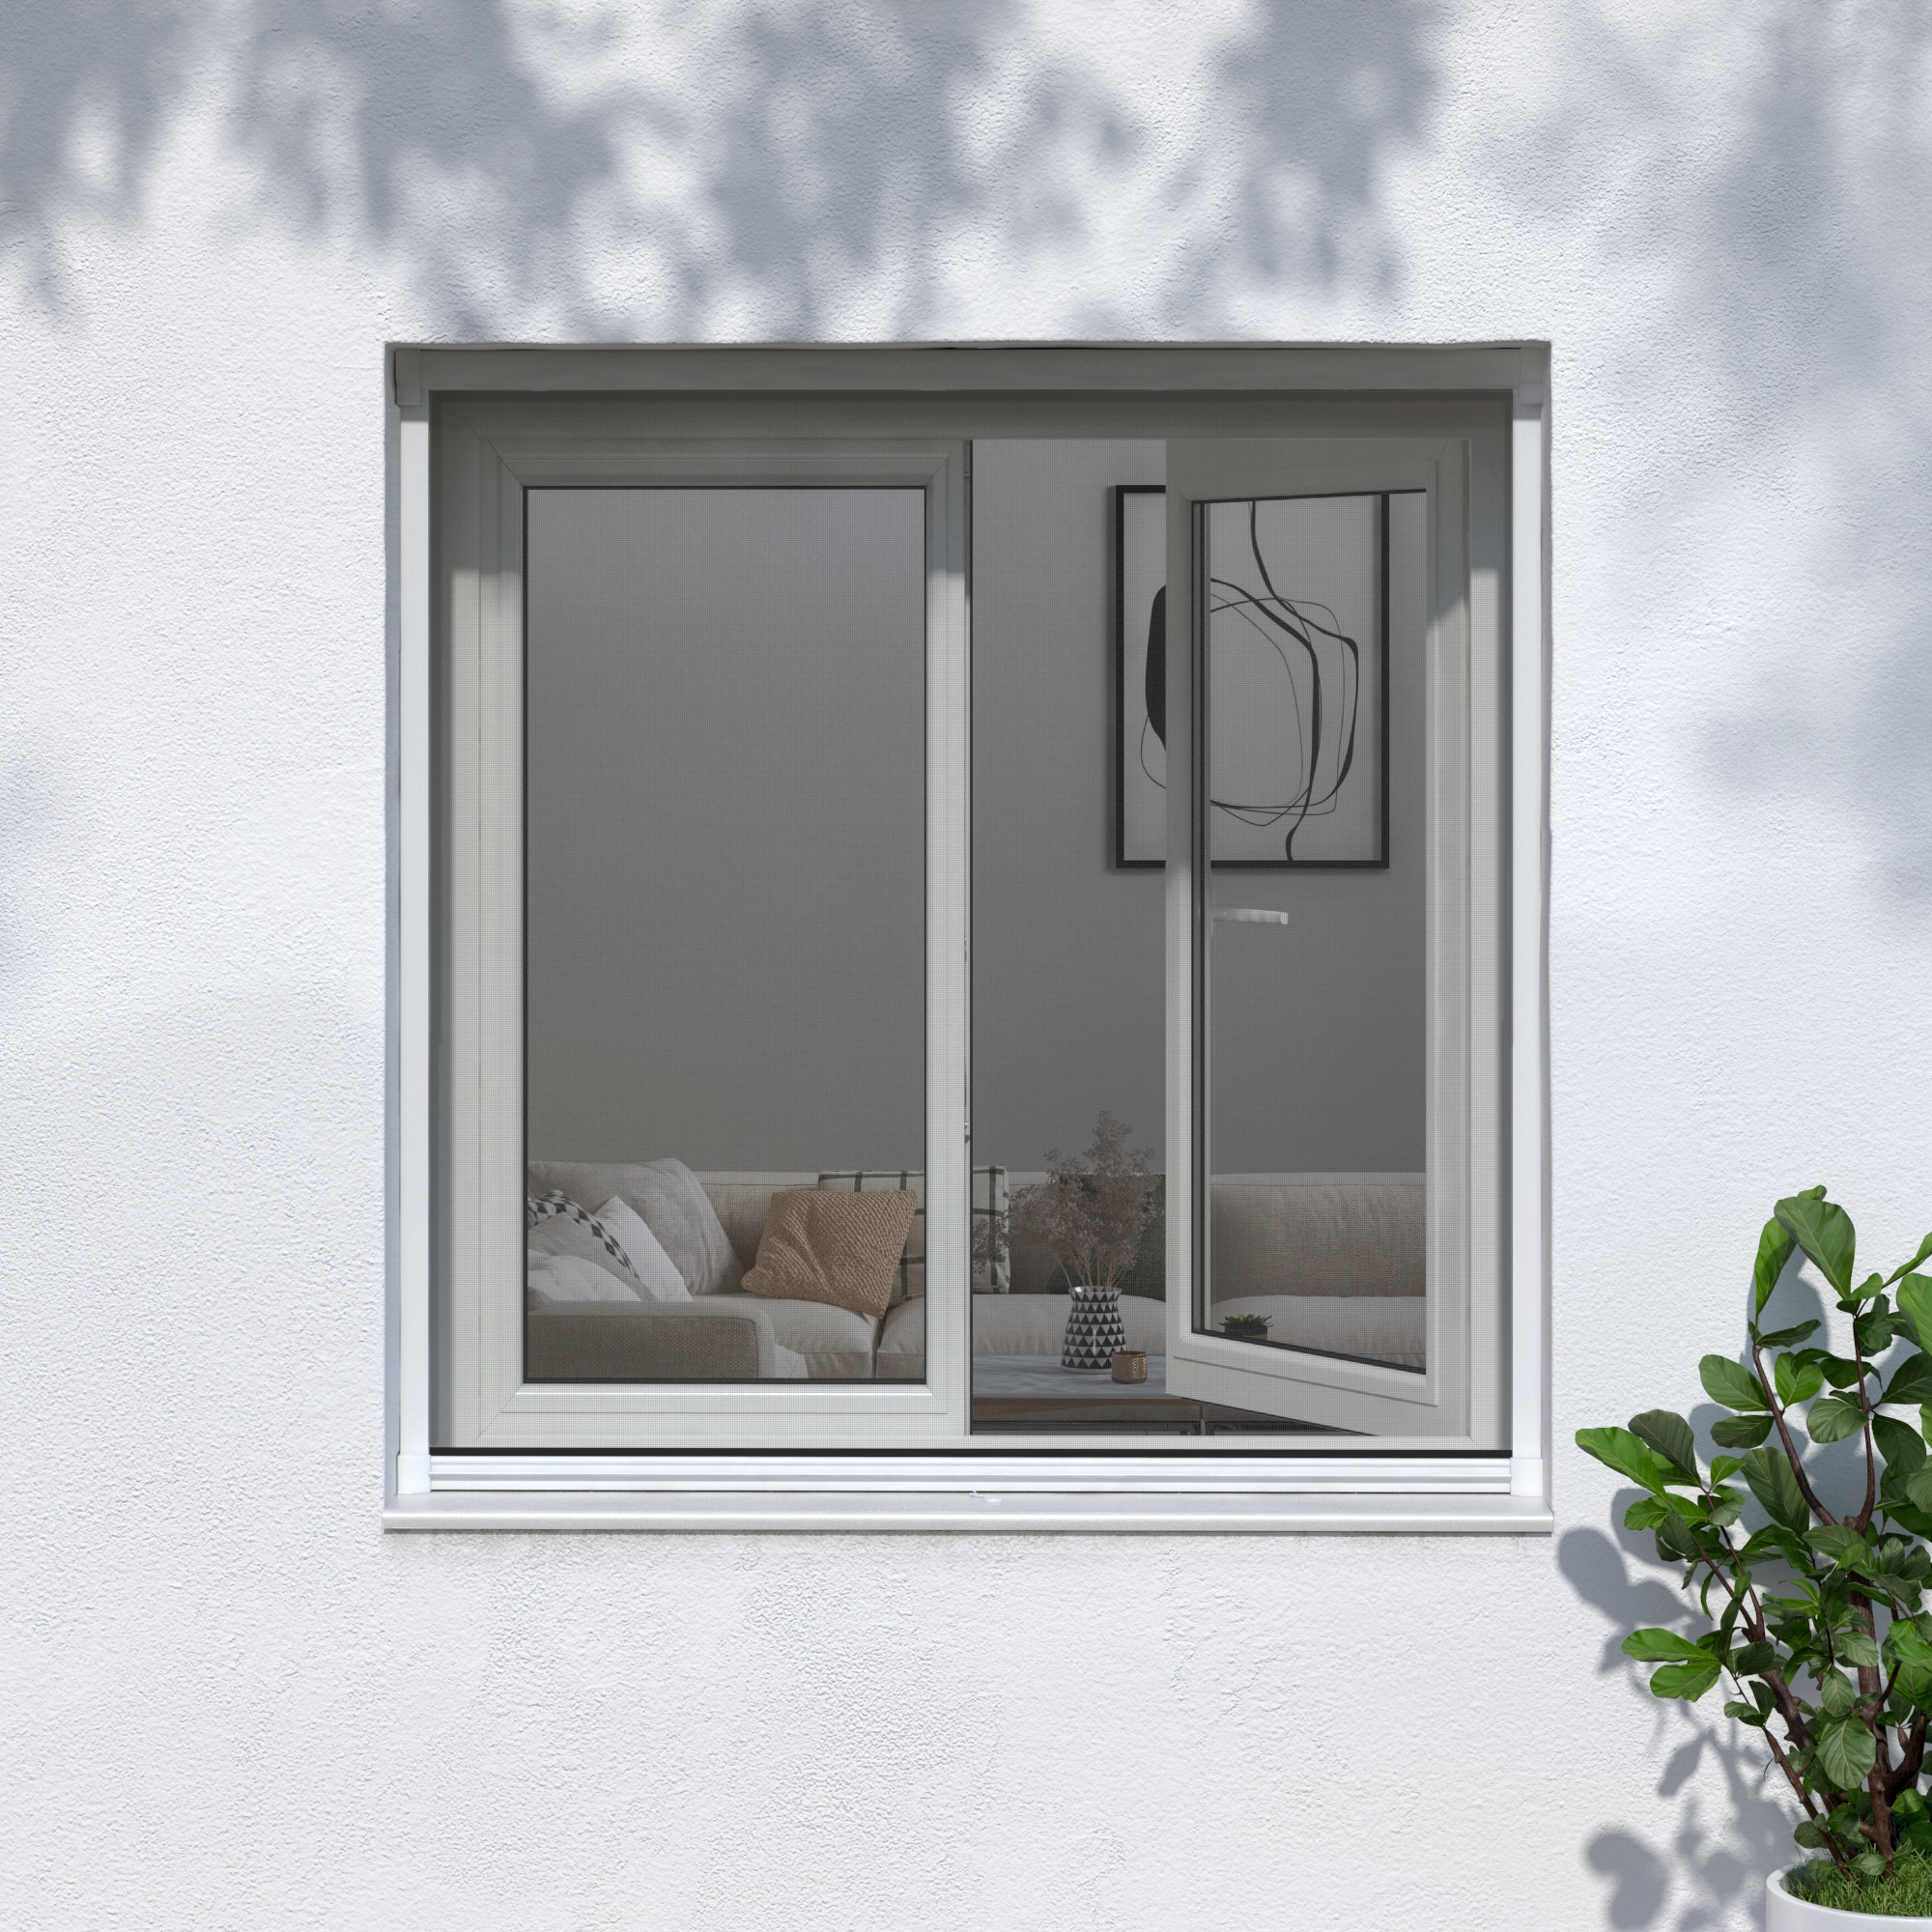 Zanzariera avvolgibile ARTENS per finestra L 130 x H 160 cm bianco - 6